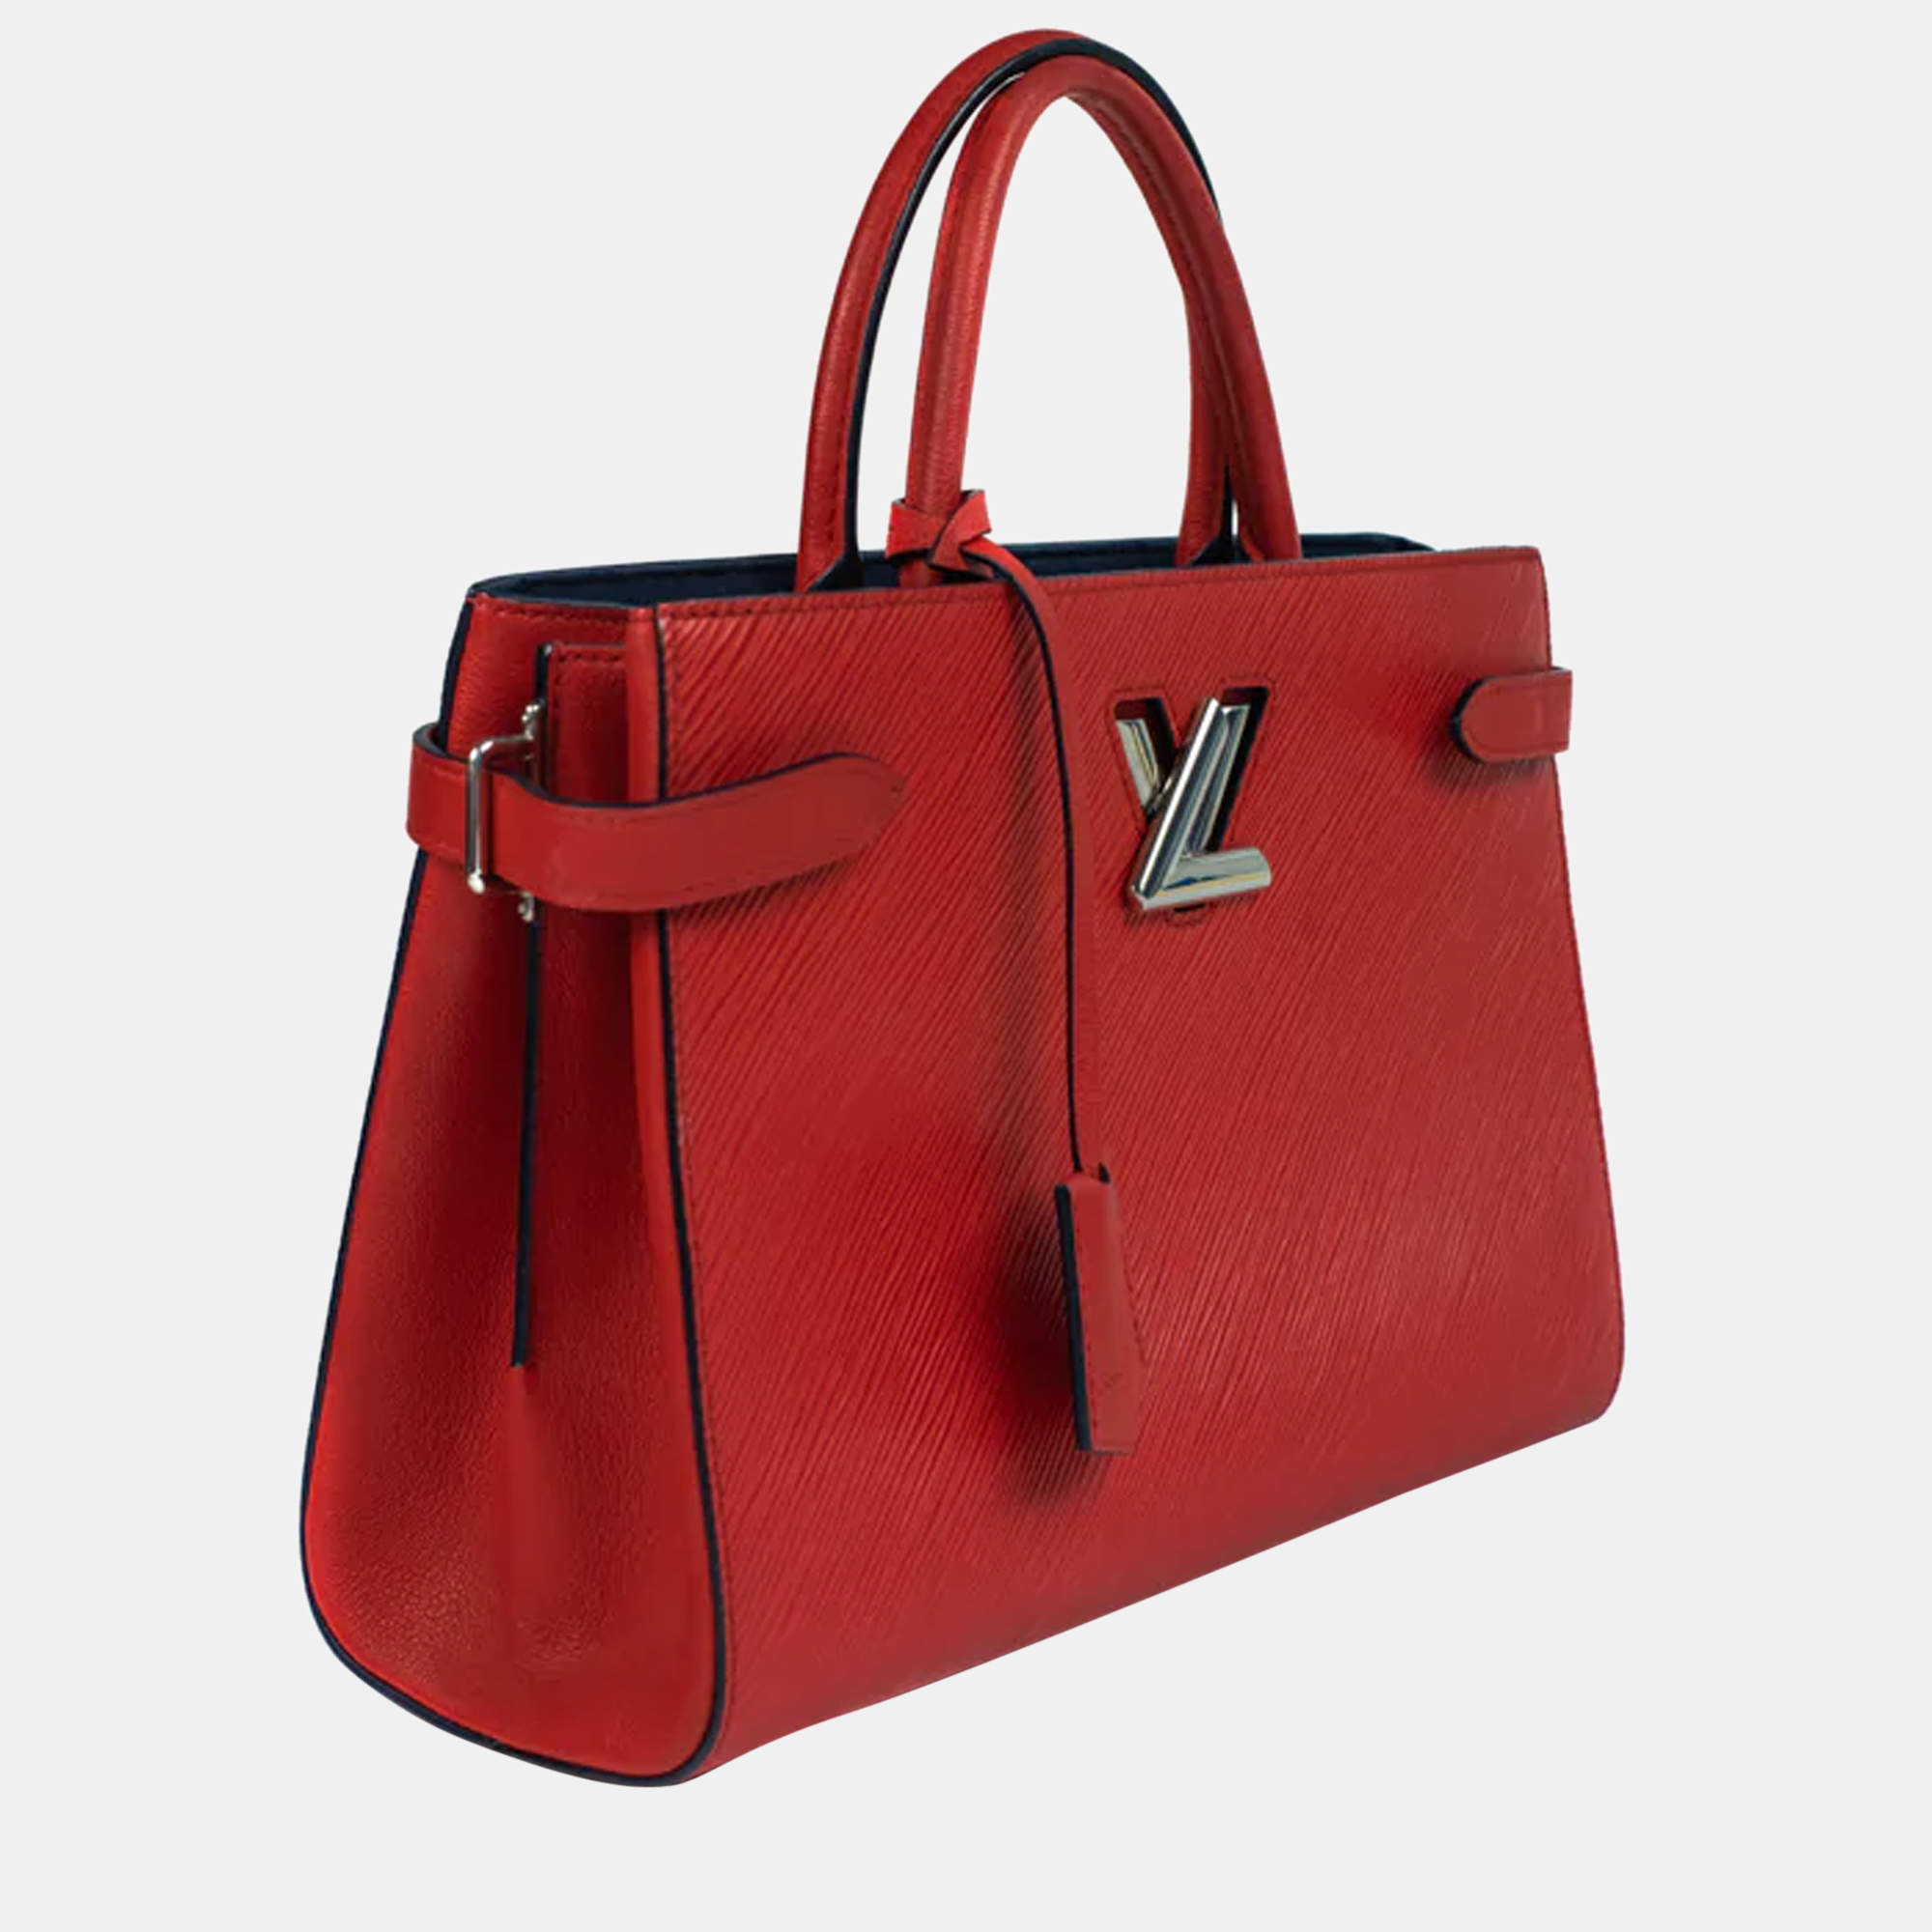 Louis Vuitton Bracelet M6401 LV Twist Epi Red Leather Spain 48200081800 i